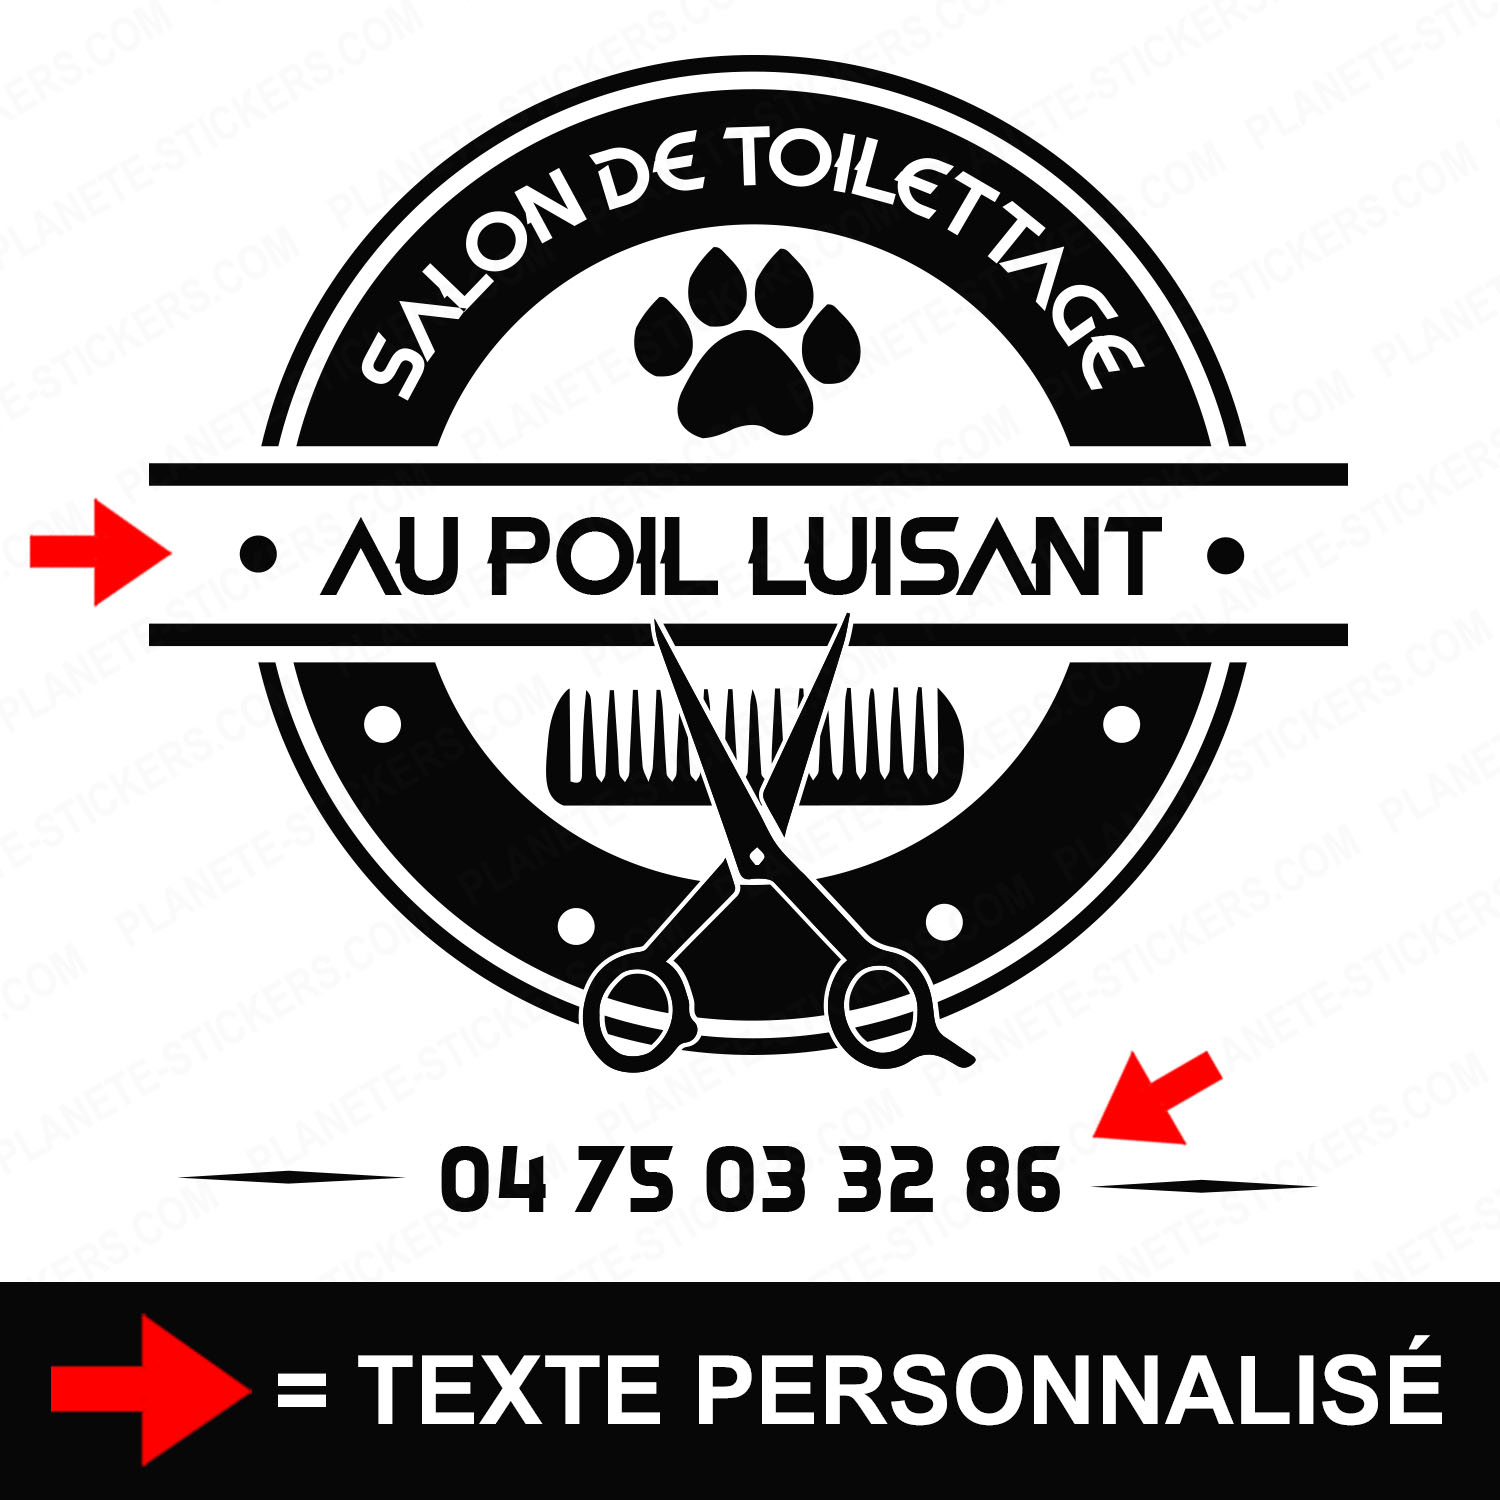 ref10salondetoilettagevitrine-stickers-salon-de-toilettage-vitrine-sticker-personnalisé-autocollant-toiletteur-pro-vitre-professionnel-logo-ciseaux-2